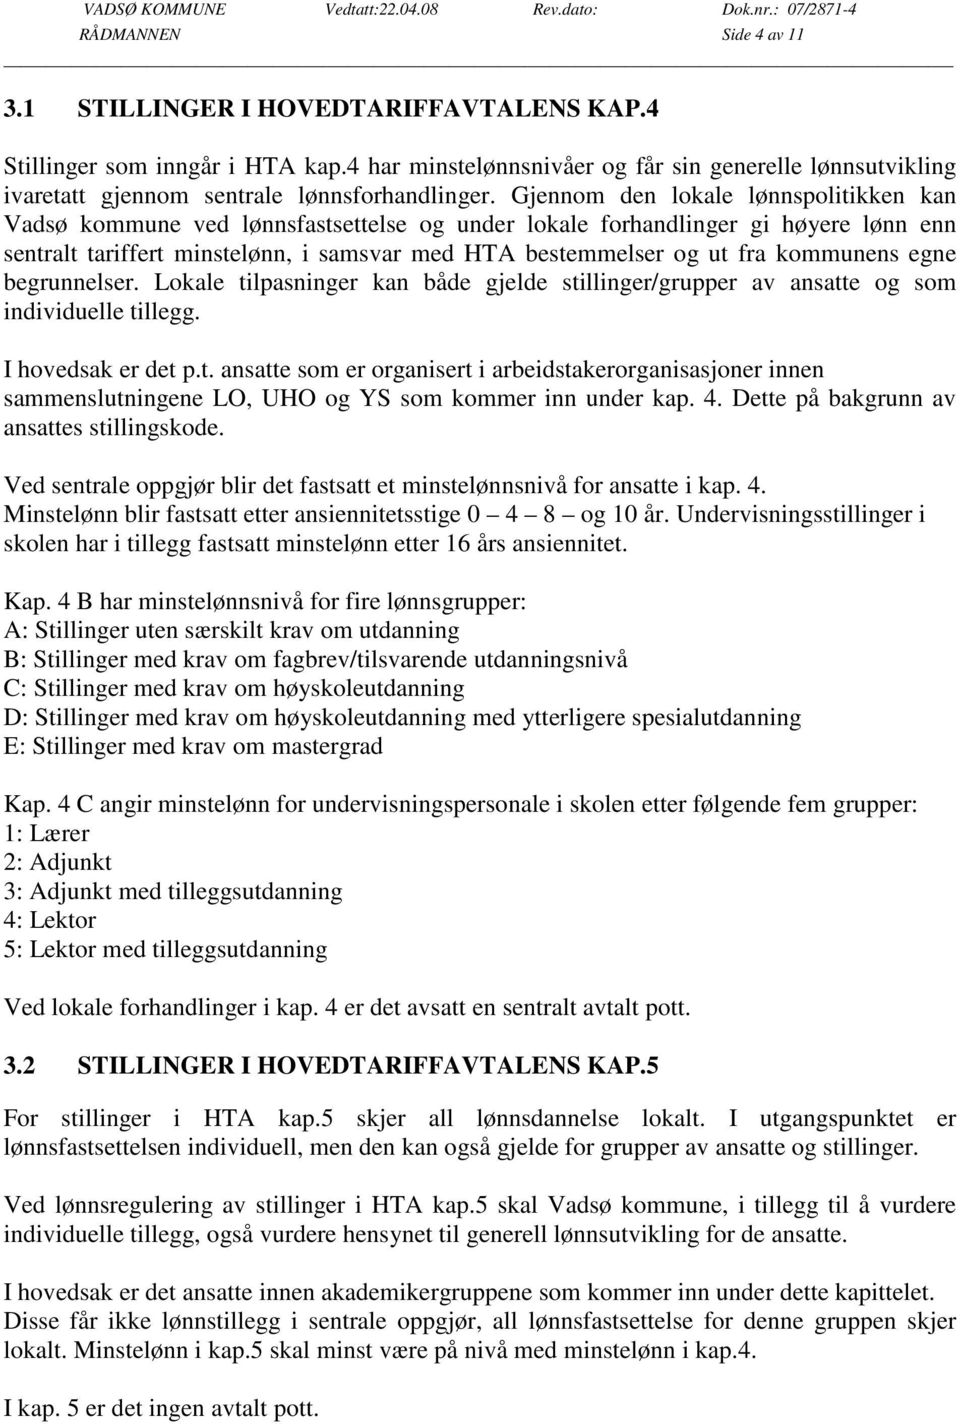 Gjennom den lokale lønnspolitikken kan Vadsø kommune ved lønnsfastsettelse og under lokale forhandlinger gi høyere lønn enn sentralt tariffert minstelønn, i samsvar med HTA bestemmelser og ut fra